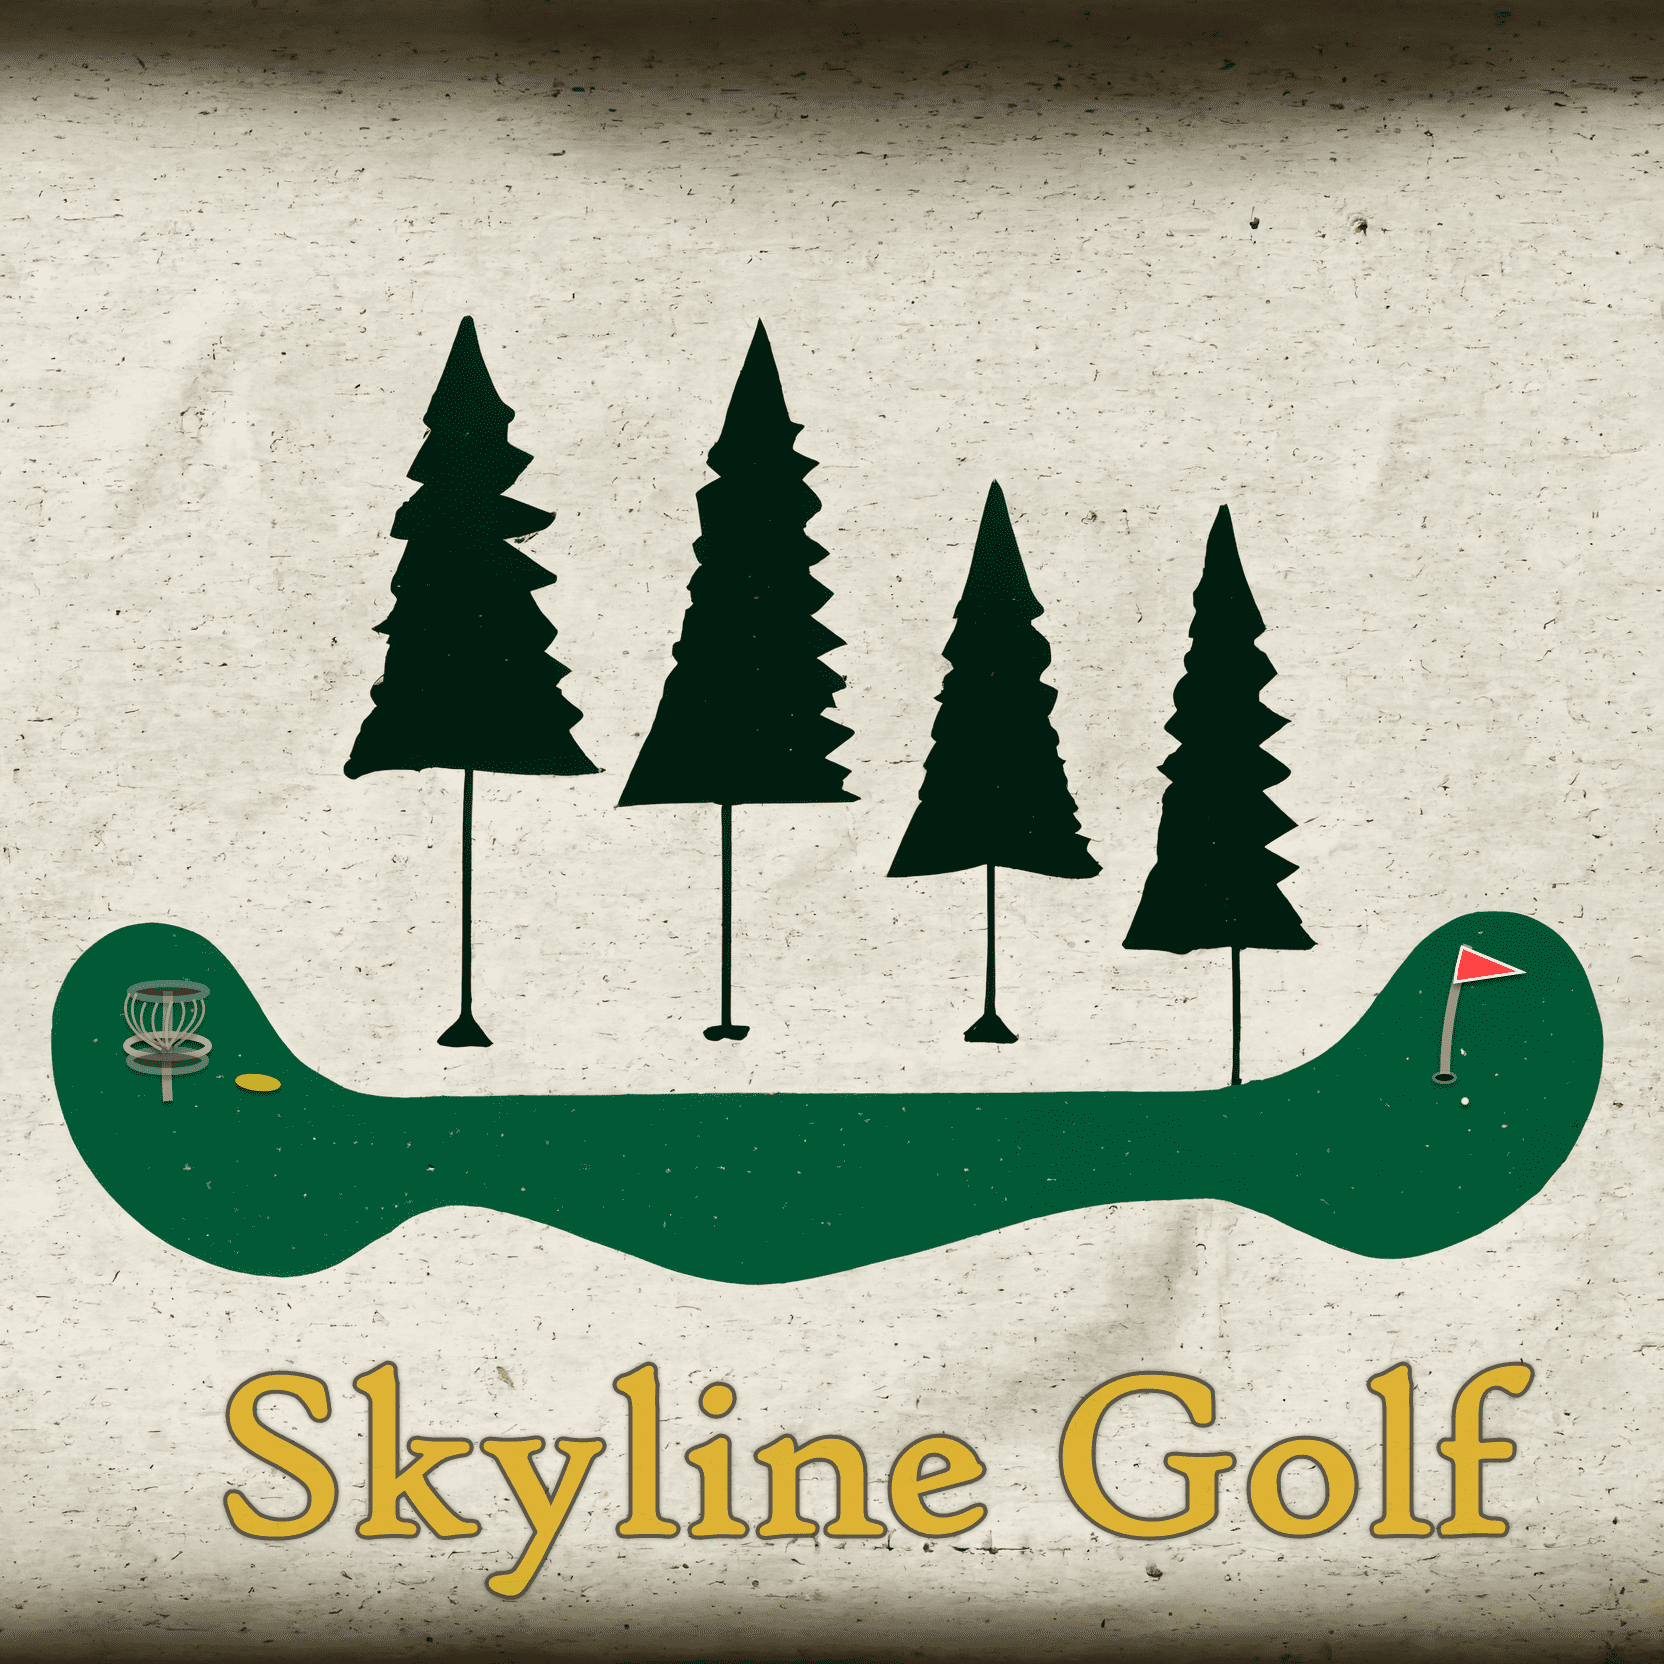 Skyline Golf